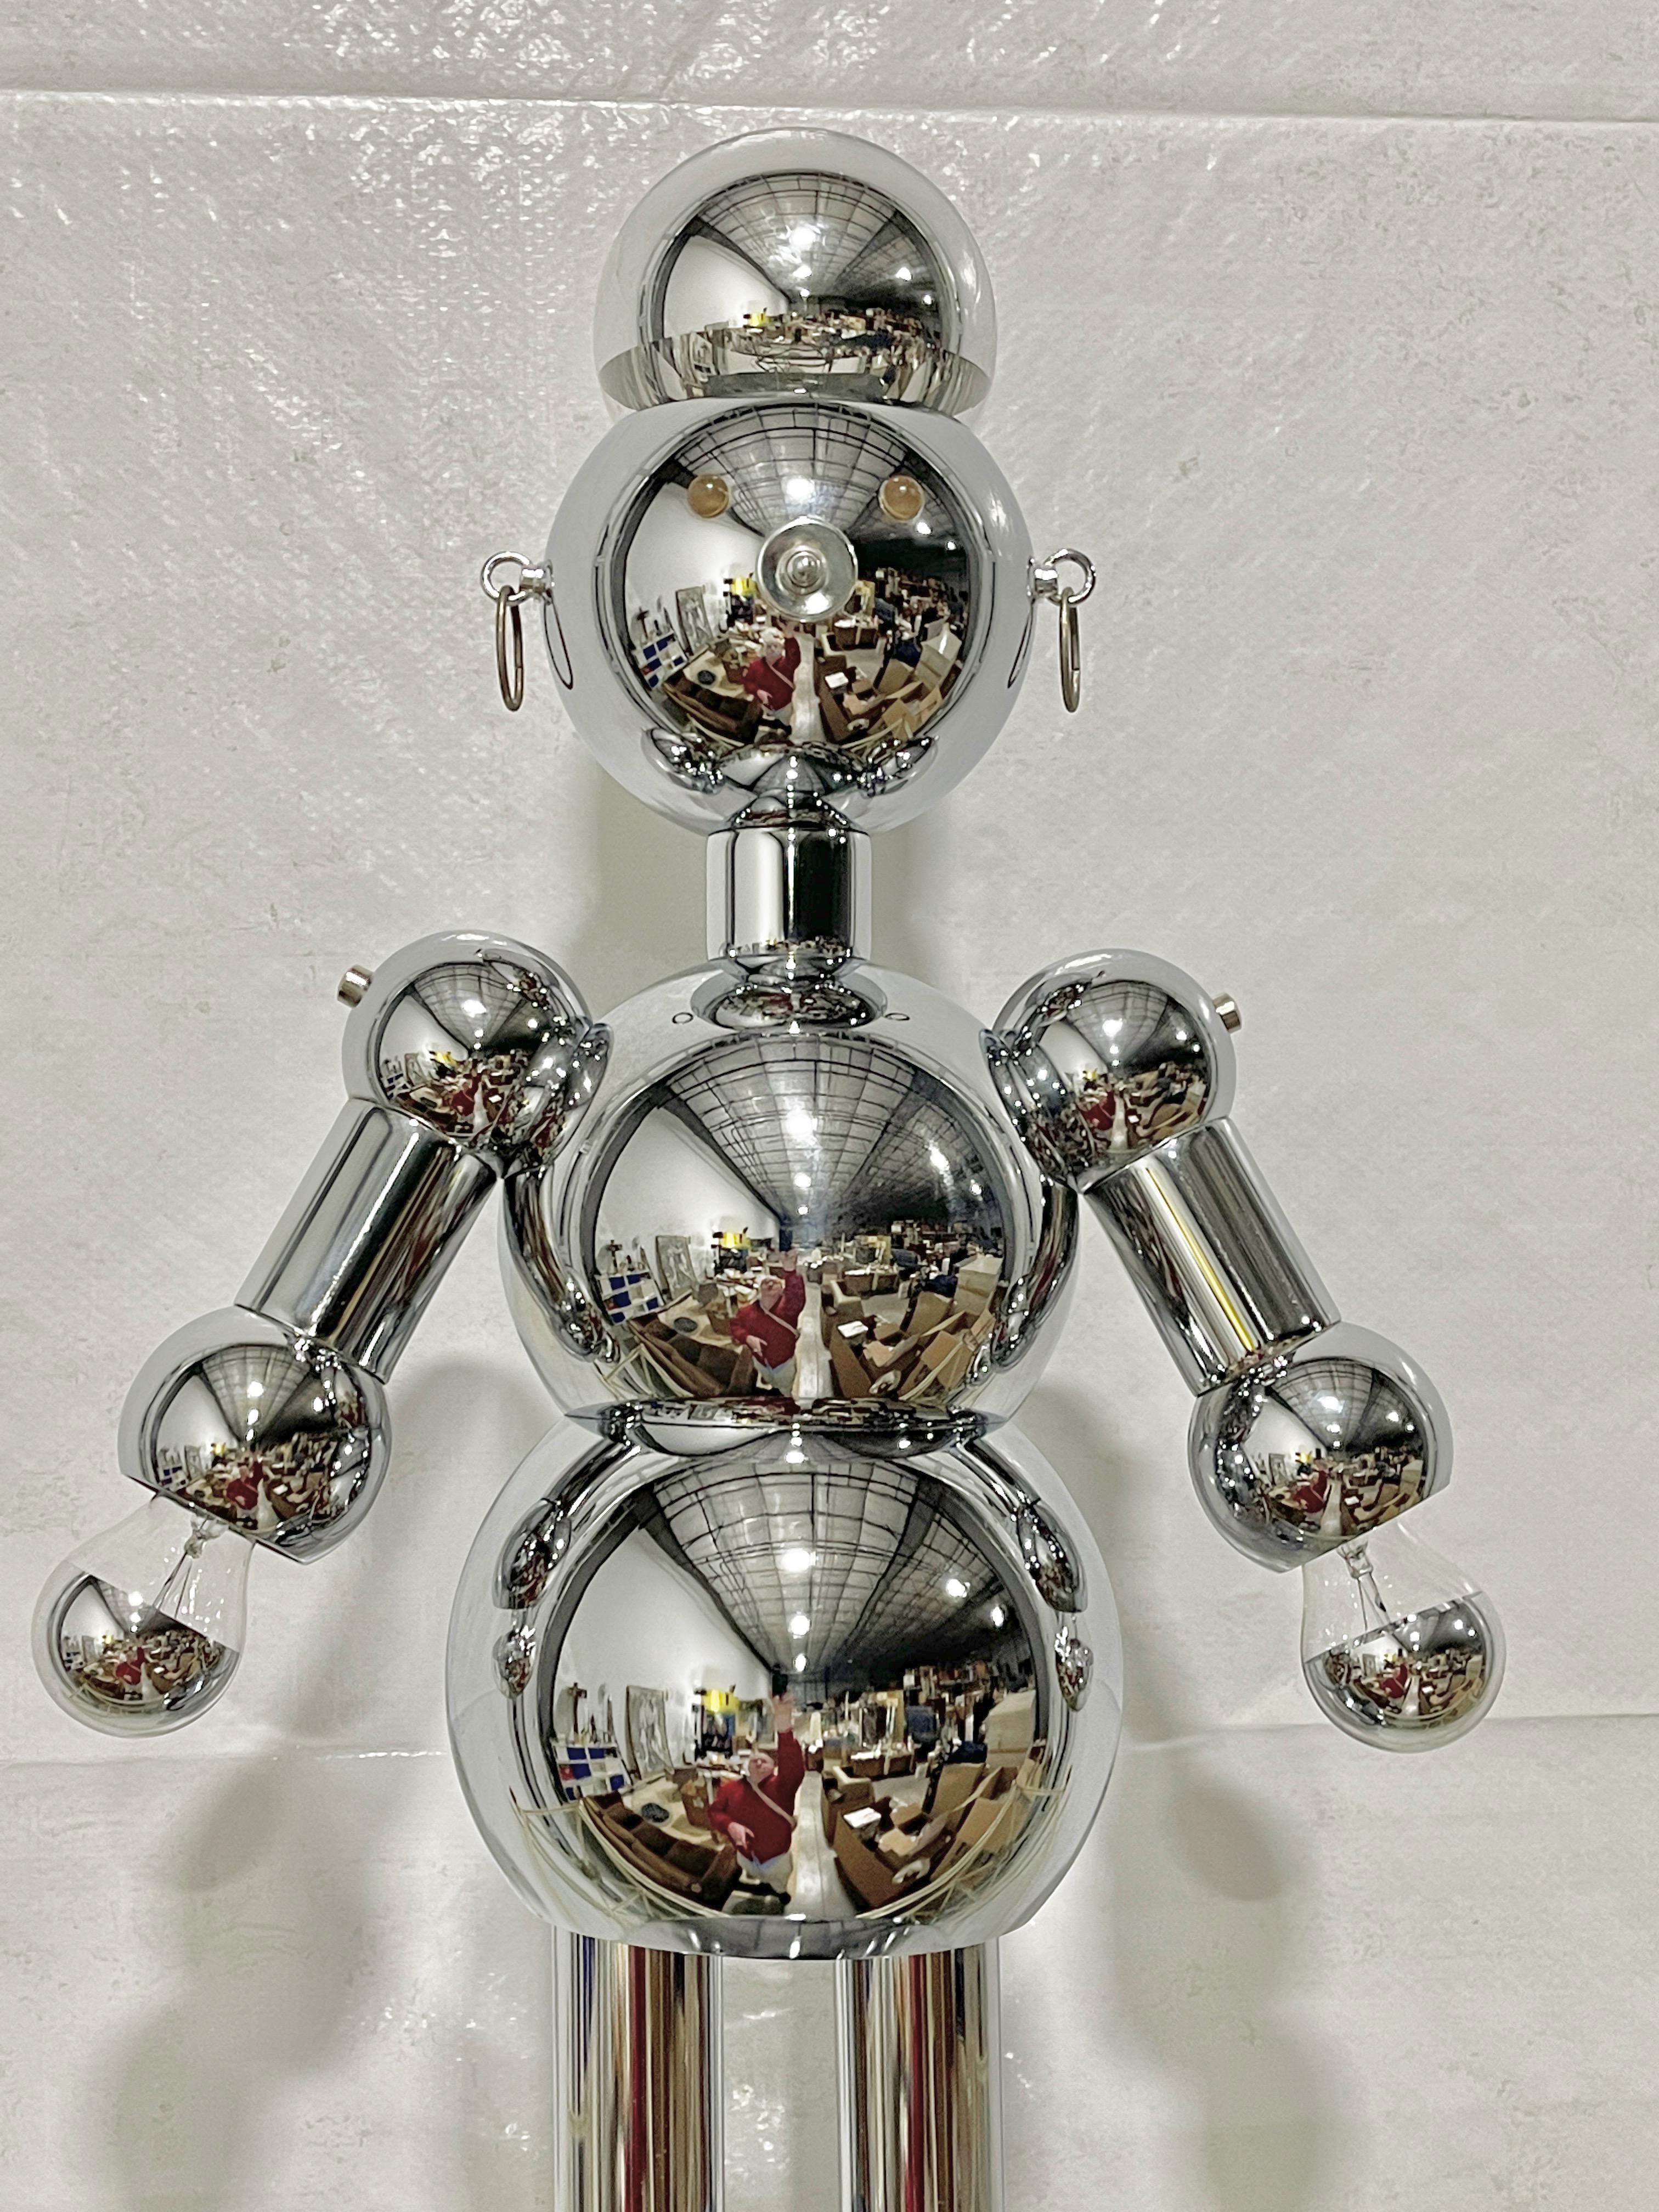 Äußerst begehrte verchromte Roboter-Stehlampe von Torino Lamps, 1978.
Oft wird angenommen, dass dieser Roboter und andere Charakterlampen italienischen Ursprungs sind. Sie wurden in Florida von Atrio Consolidated Industries, Inc. dba Torino Lamps